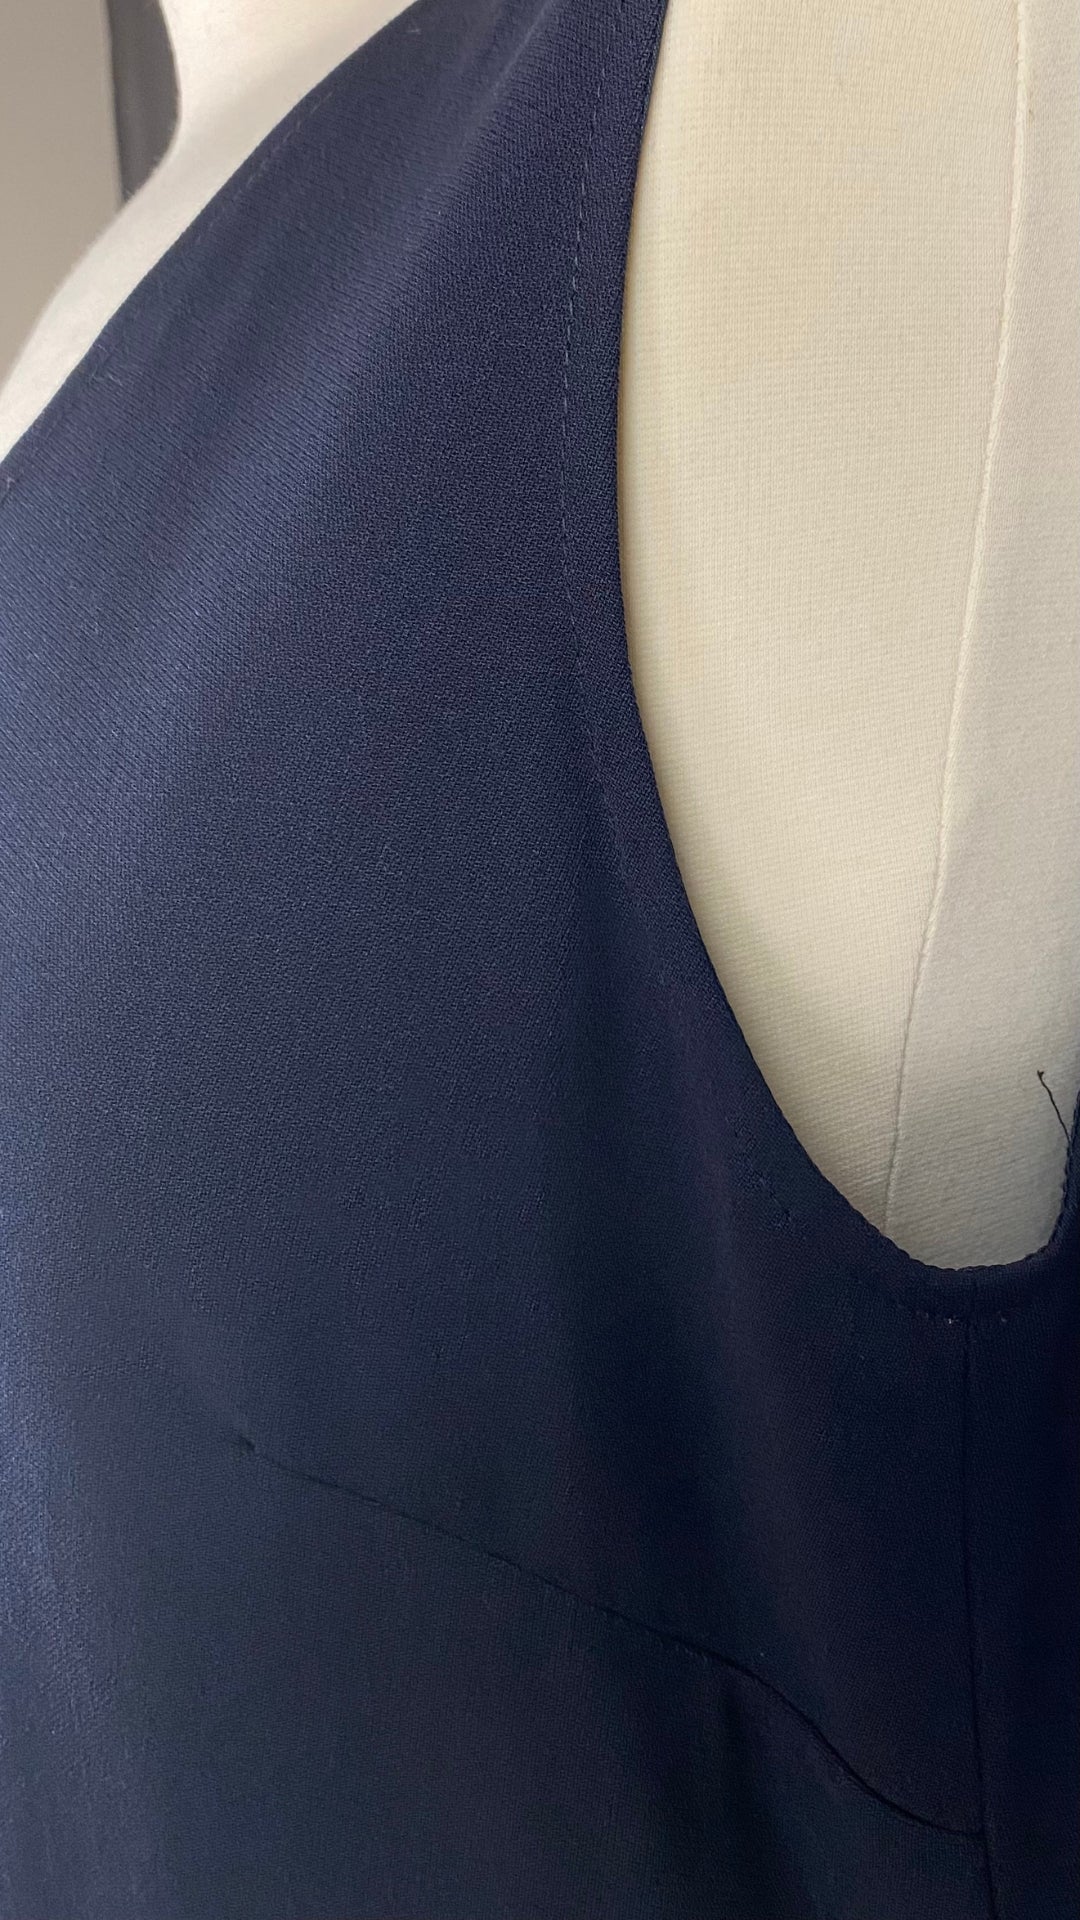 Robe classique vintage Tristan & Iseut, marine en lainage fin. Vue de la pince de poitrine.